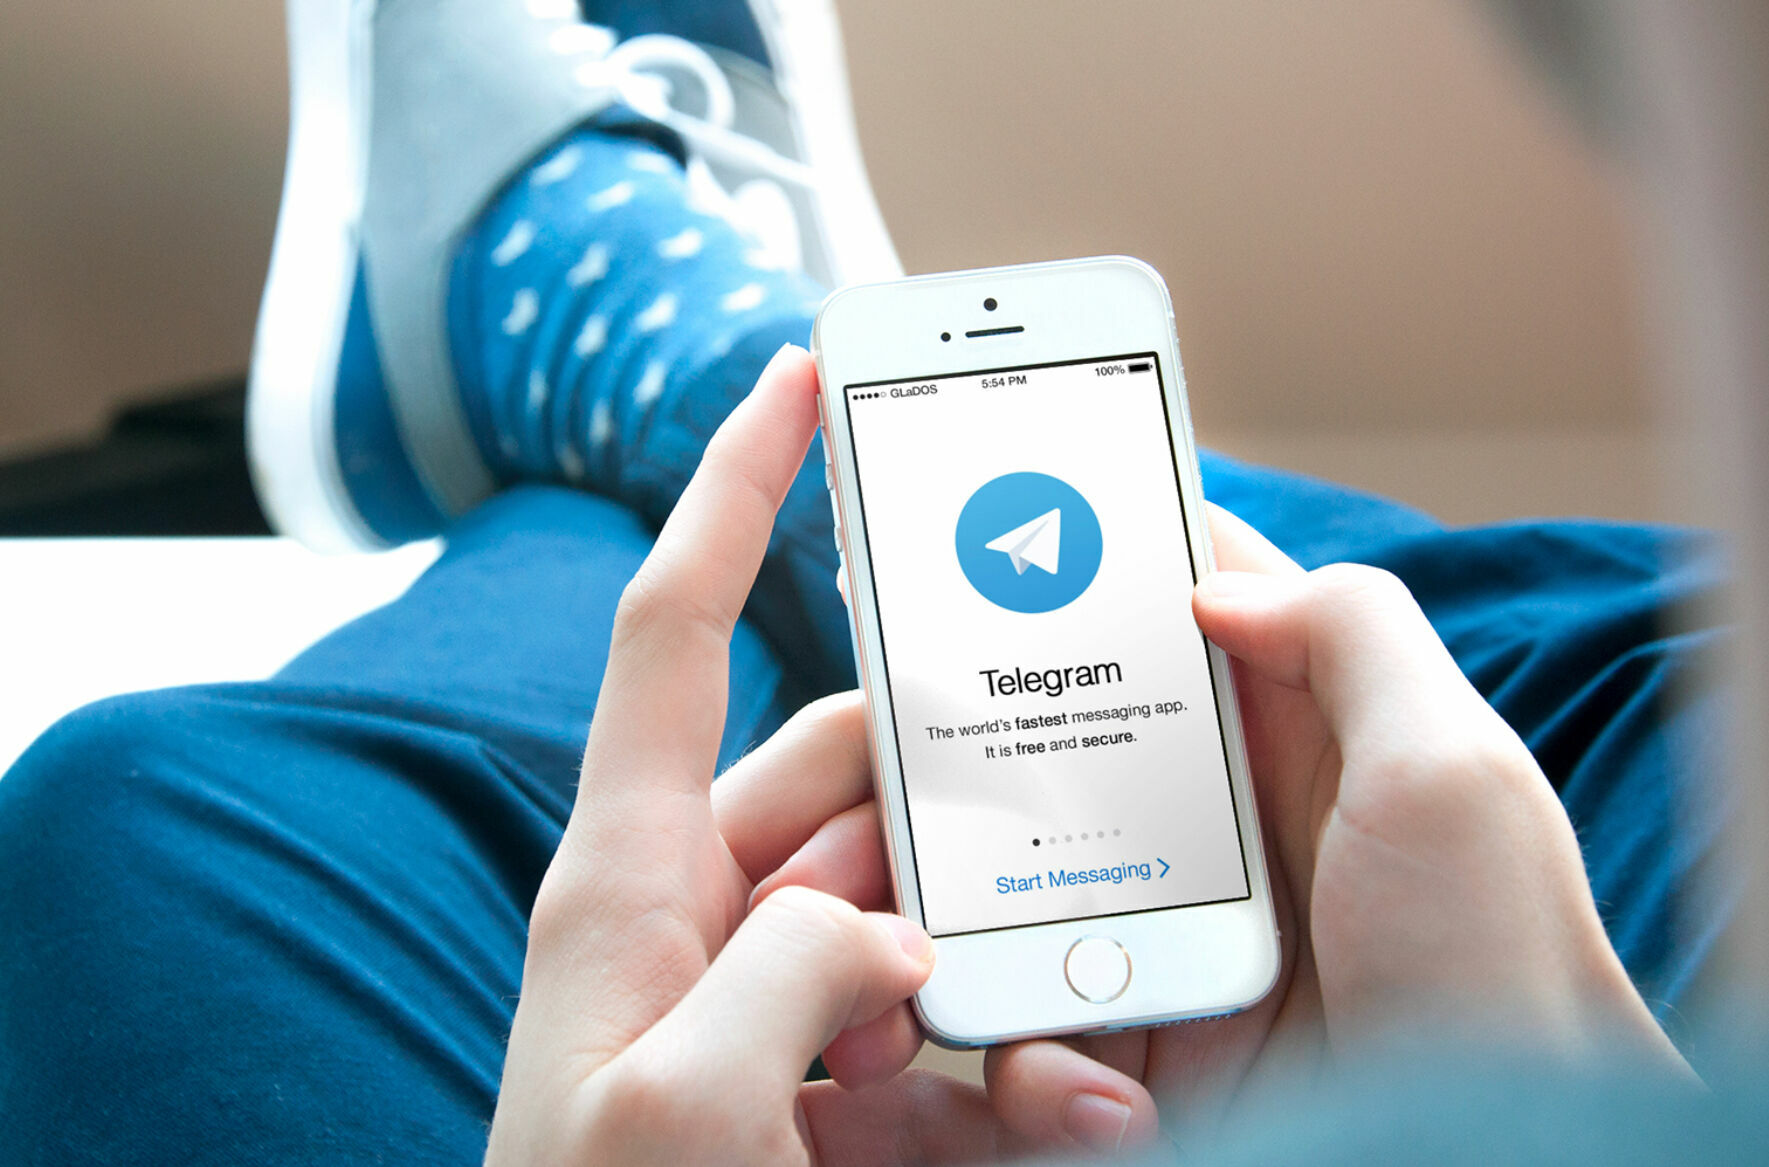 В работе Telegram произошел глобальный сбой